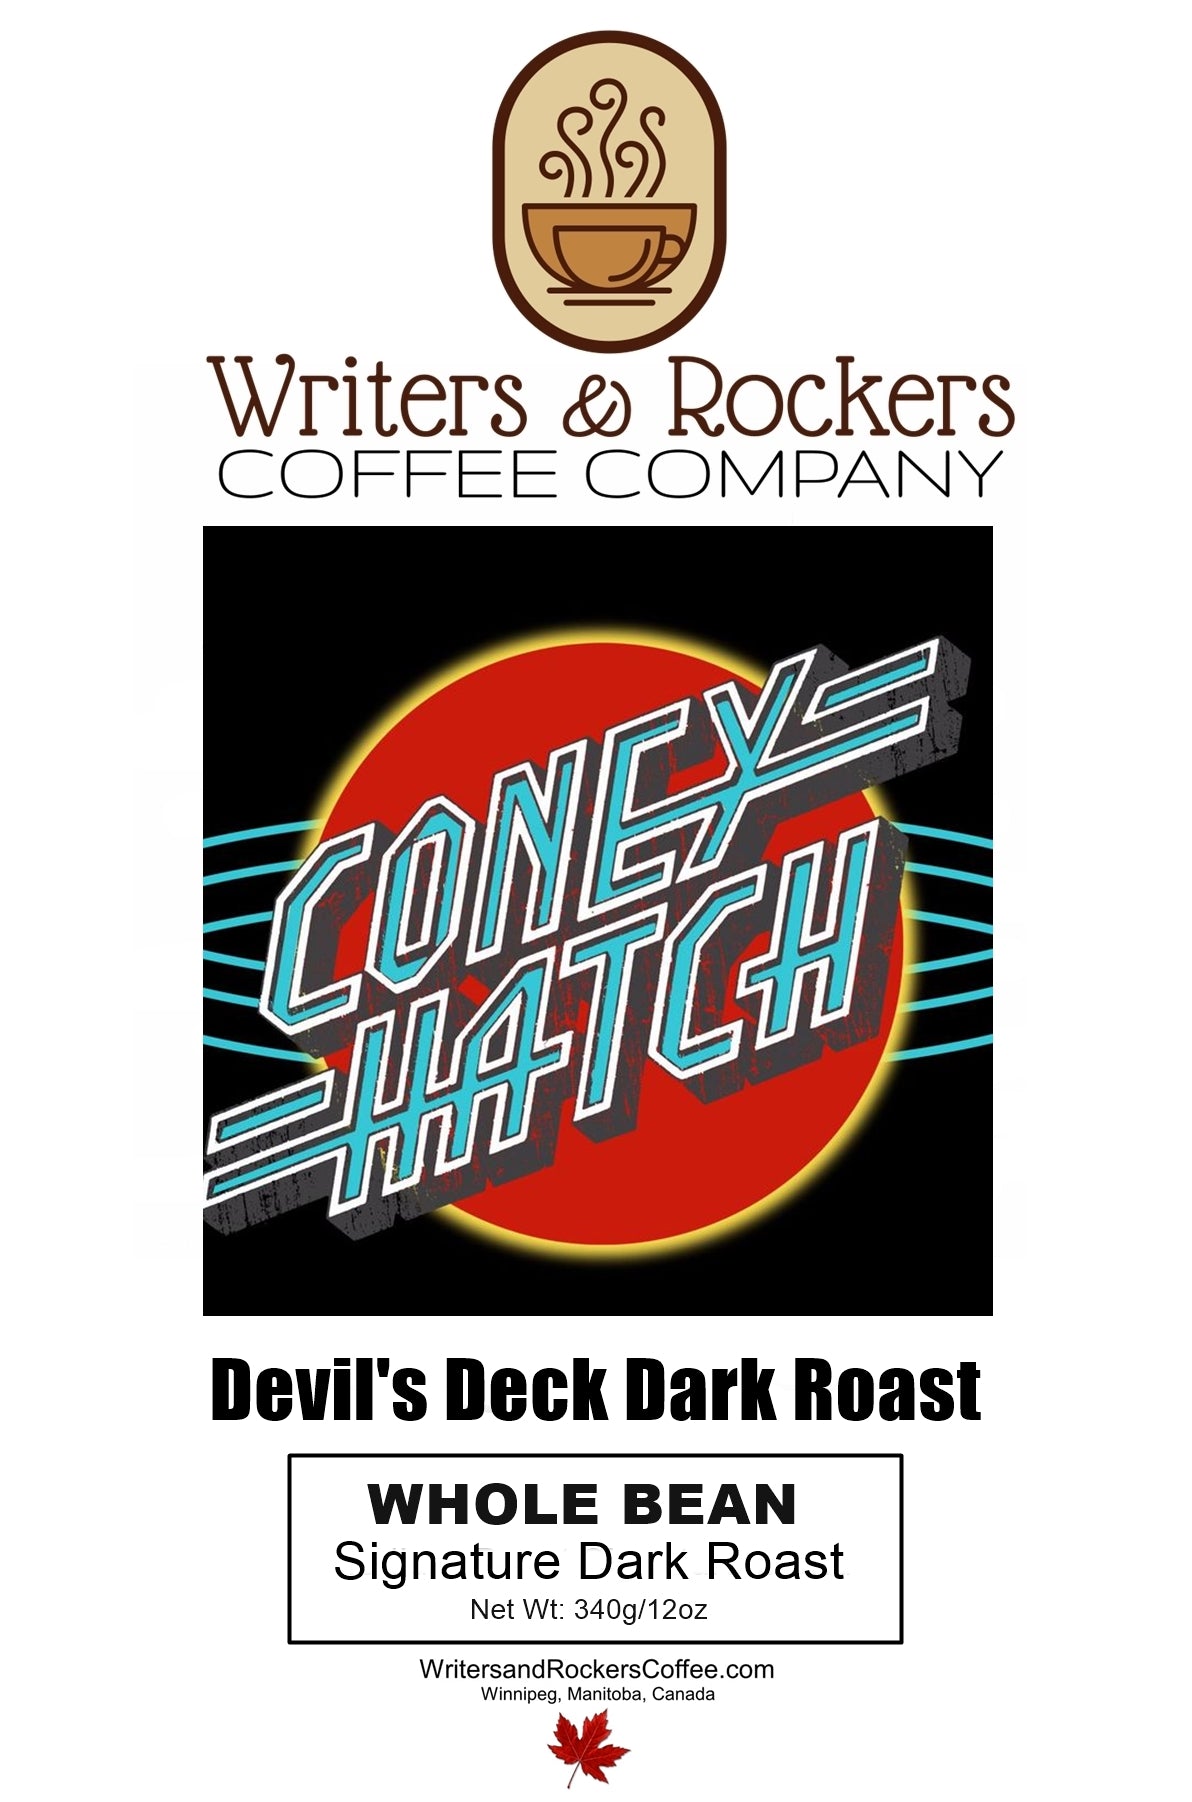 Coney Hatch - Devil's Deck Dark Roast